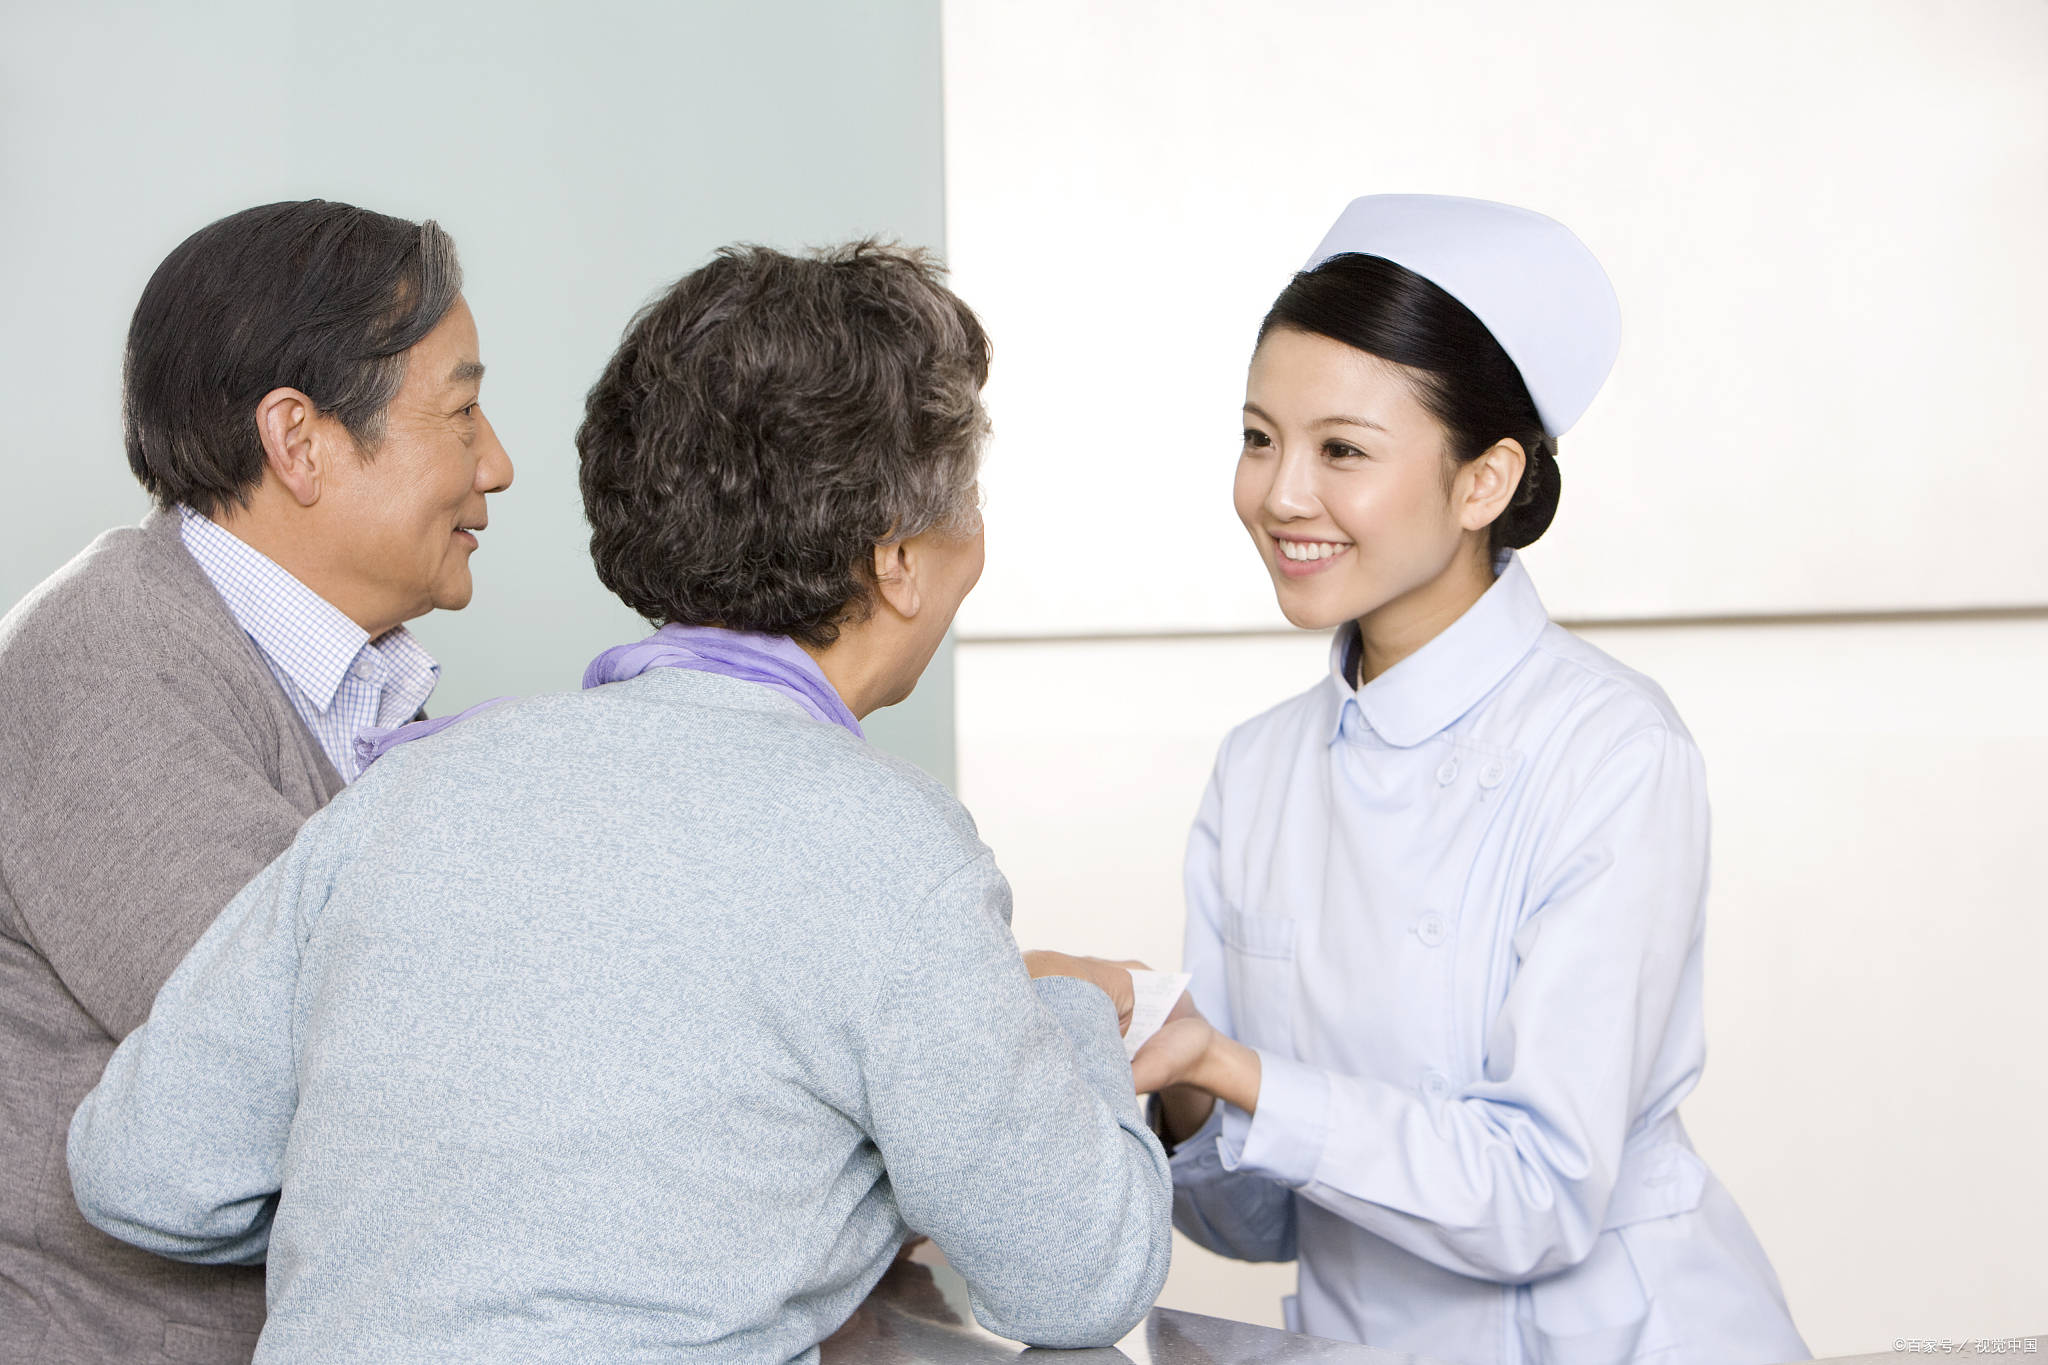 关于安贞医院外籍患者就诊指南代挂陪诊就医的信息